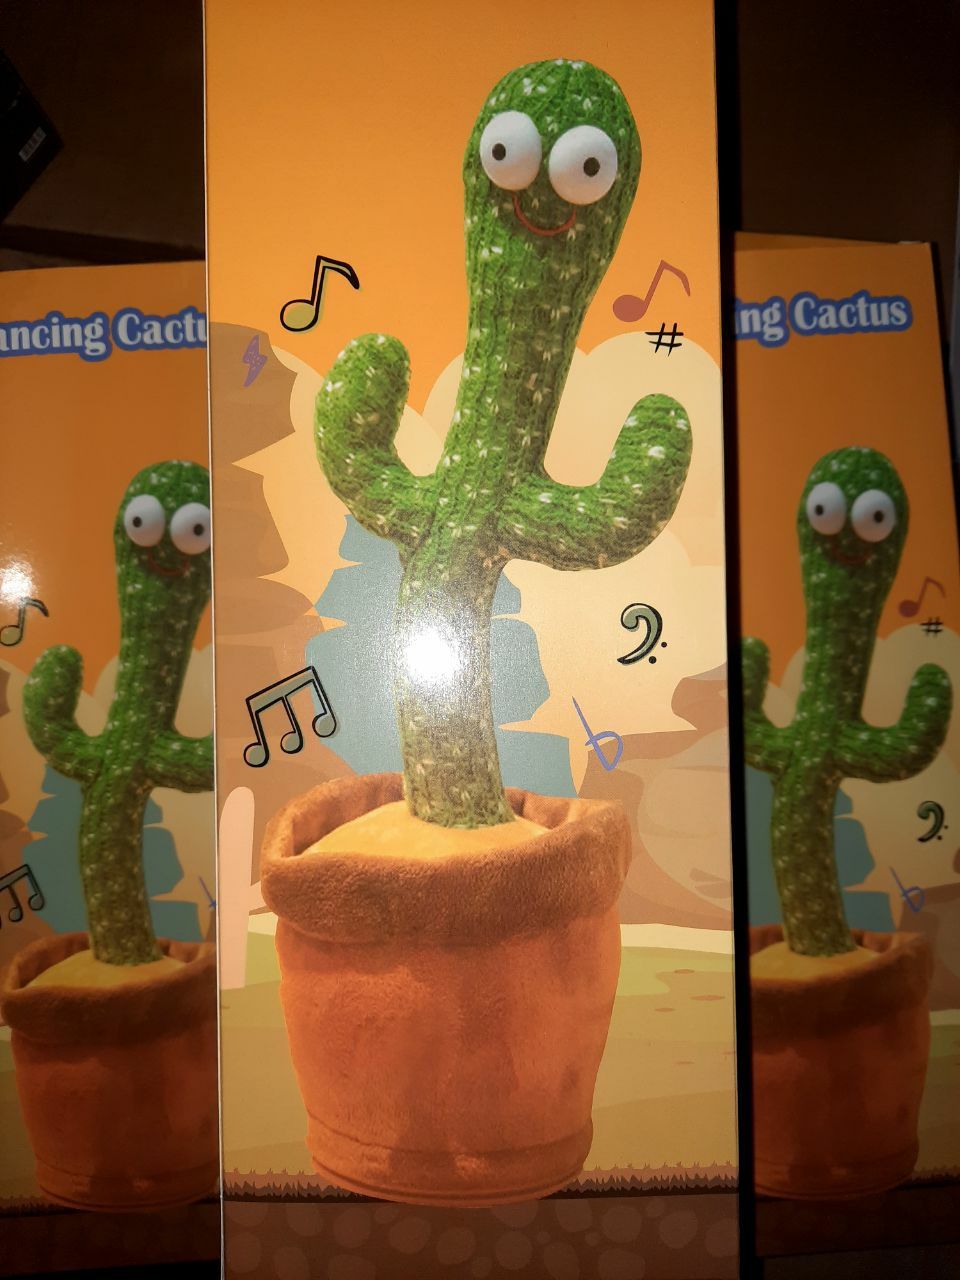 БЕПУЛ Доставка, Говорящий Кактус, Танцующий Кактус,Dancing cactus.